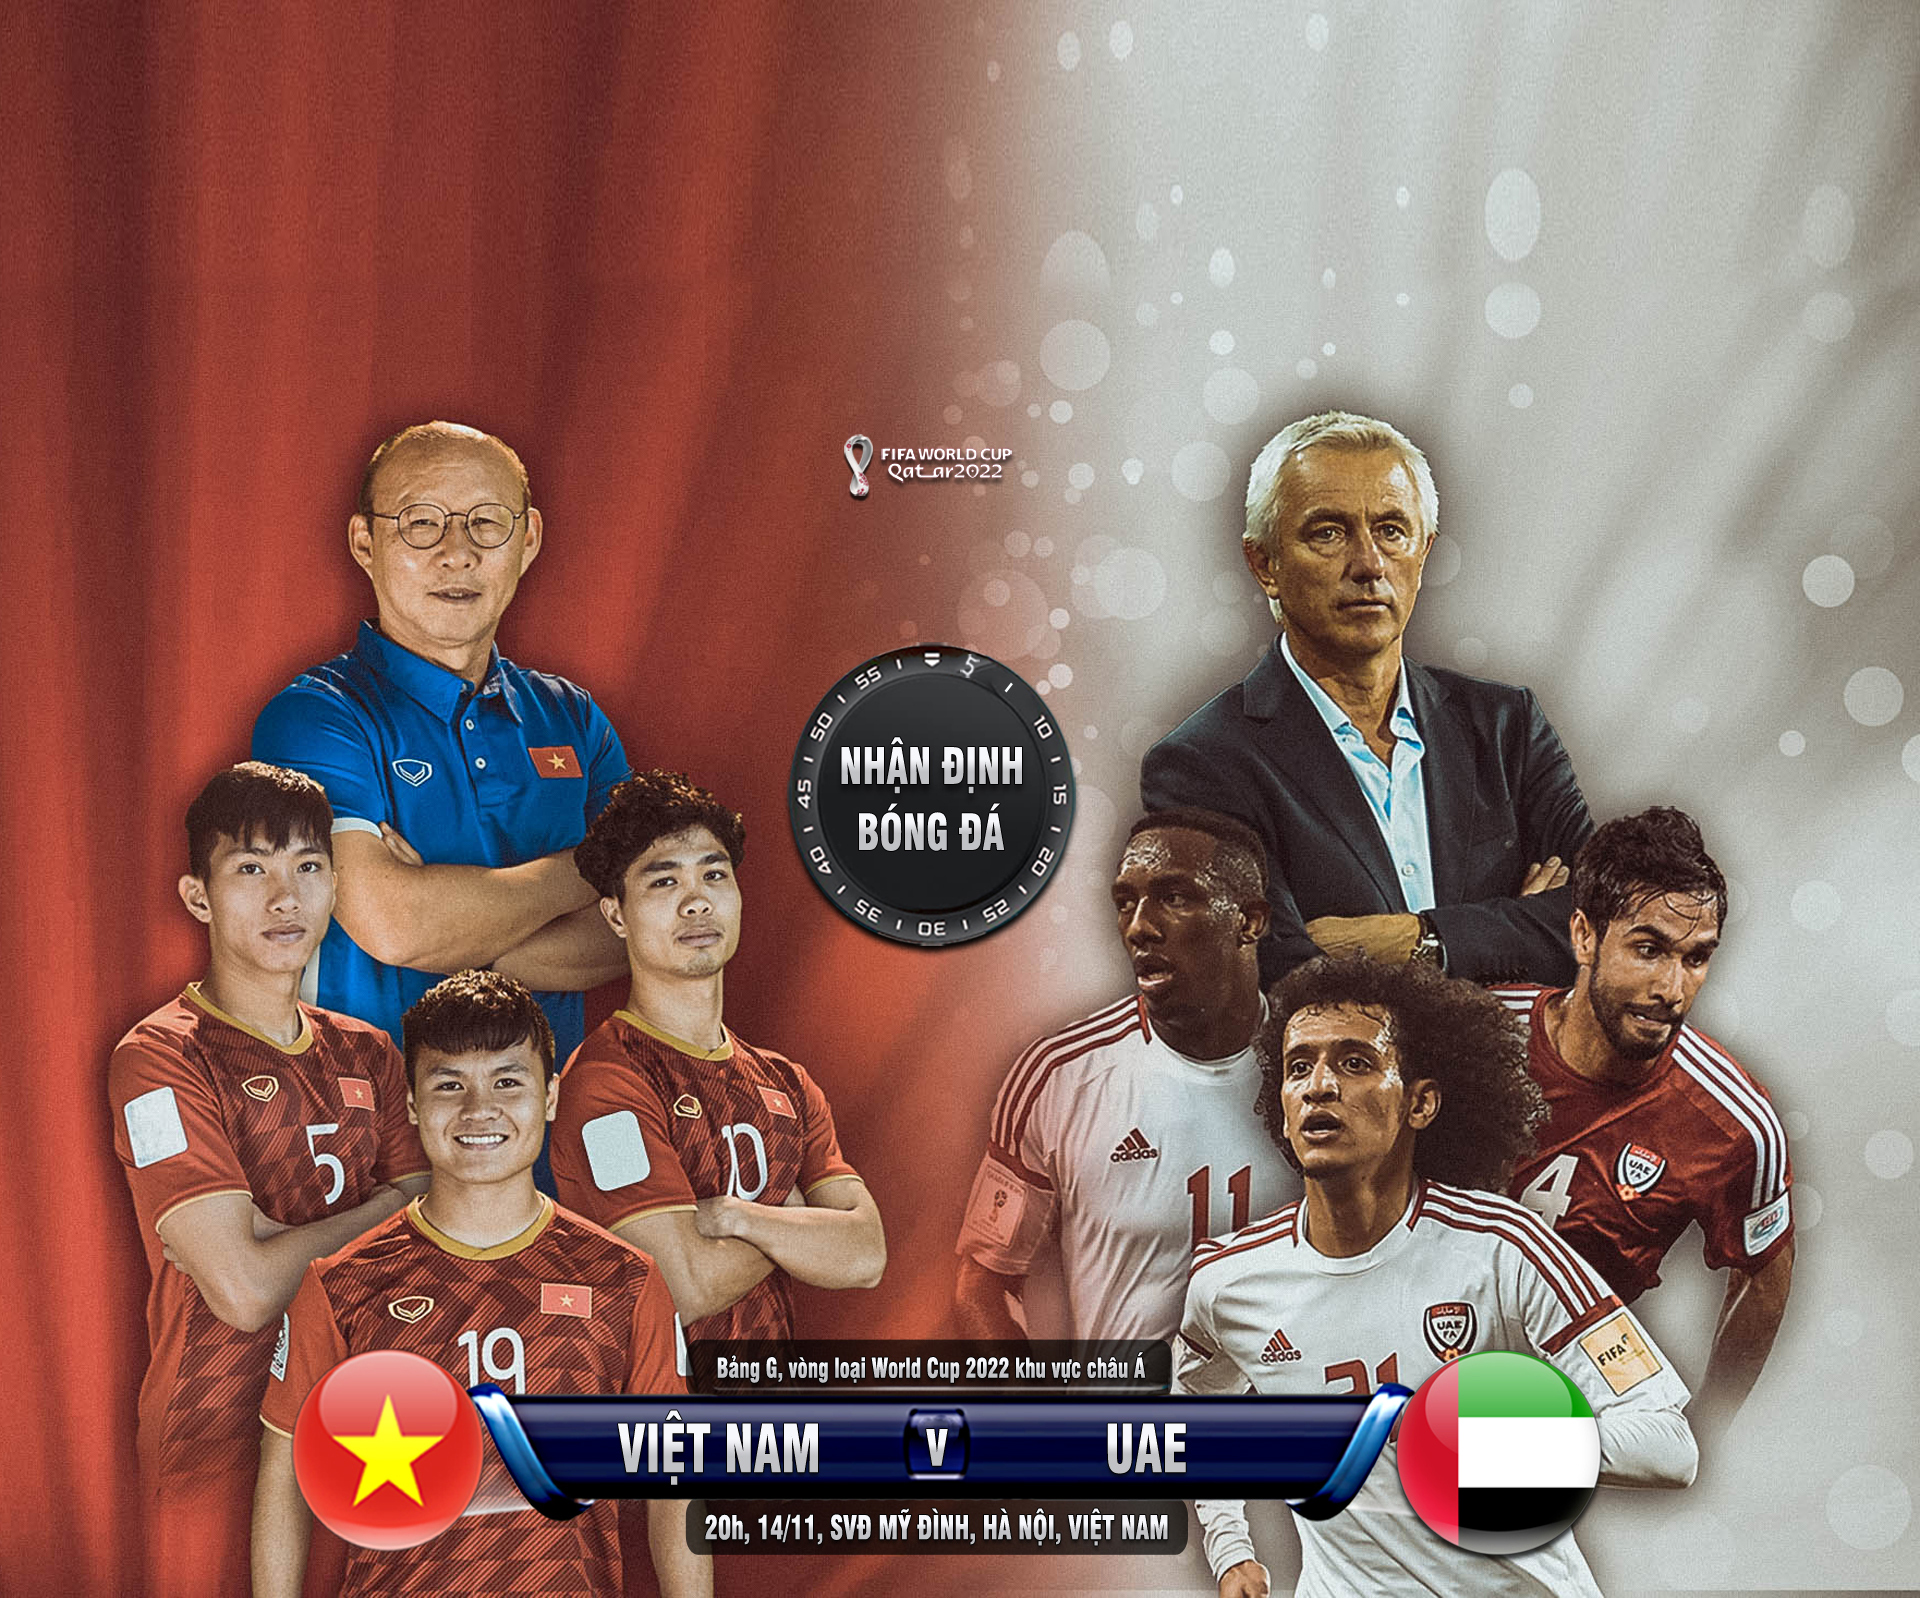 Nhận định bóng đá Việt Nam - UAE: Hừng hực khí thế tái lập siêu kỳ tích 2007 (Vòng loại World Cup) - 1